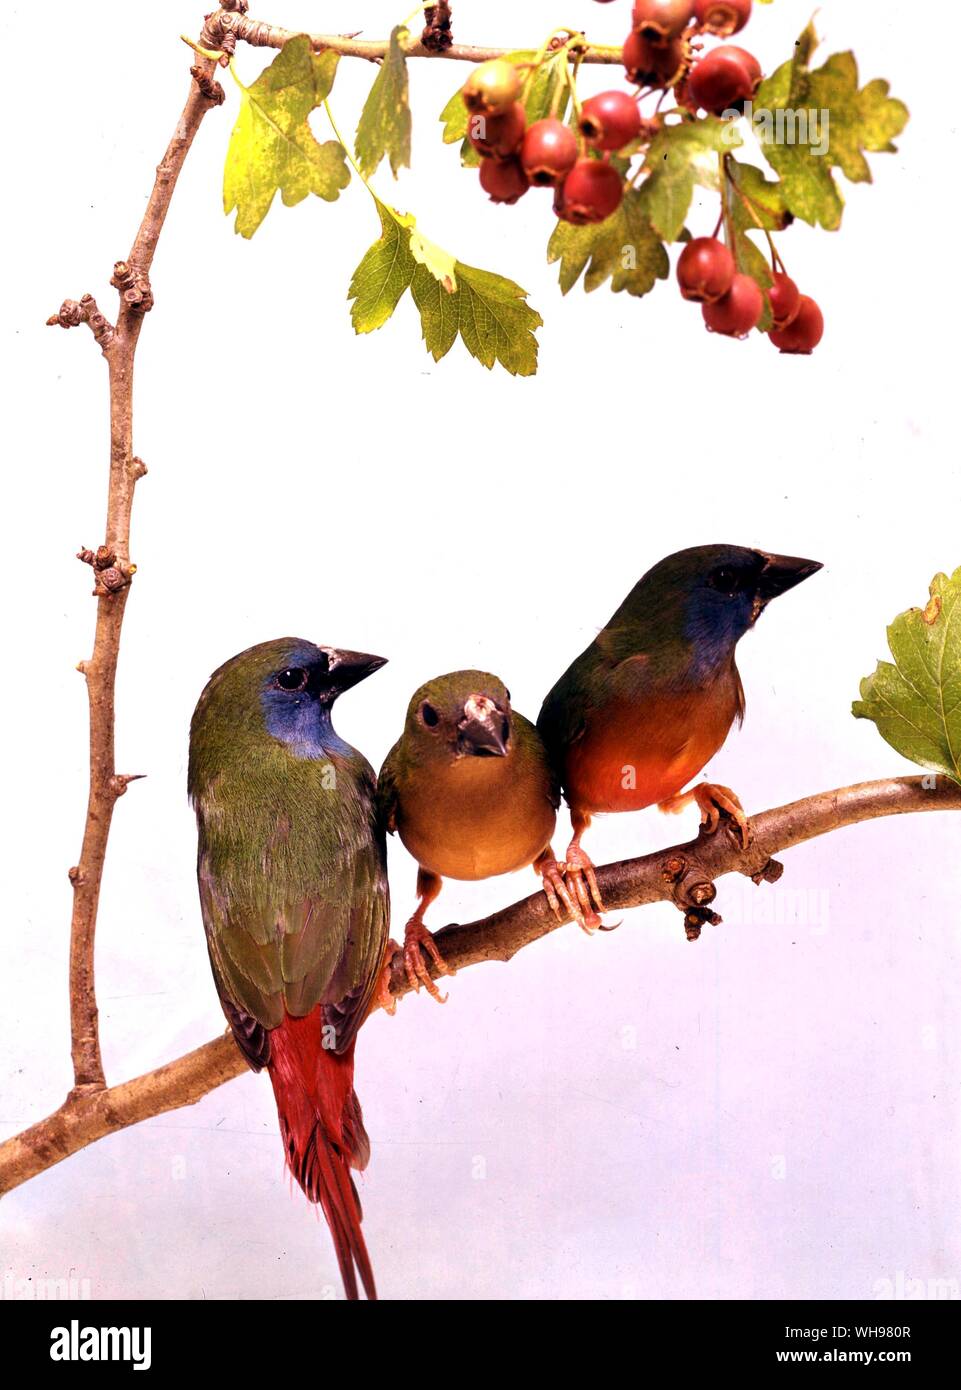 Drei Pin-tailed Parrot Finken, Henne in der Mitte (Rückseite Jacke von Buch) Stockfoto